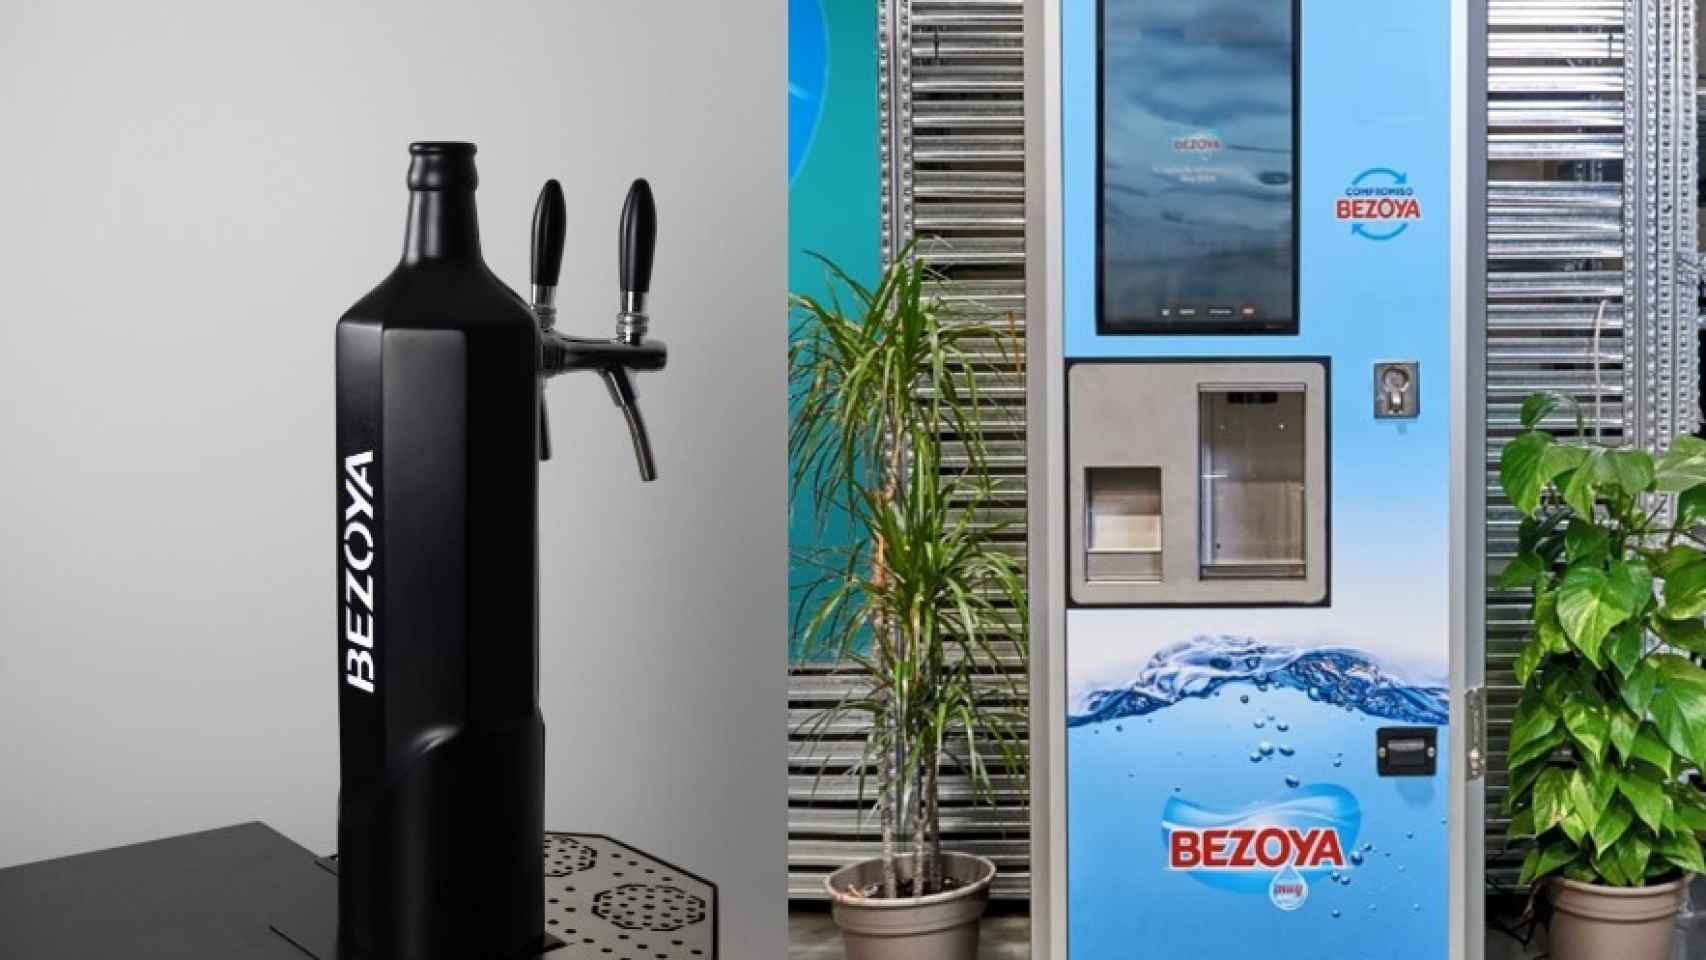 Bezoya presenta un formato octogonal para su embalaje sostenible de agua  mineral